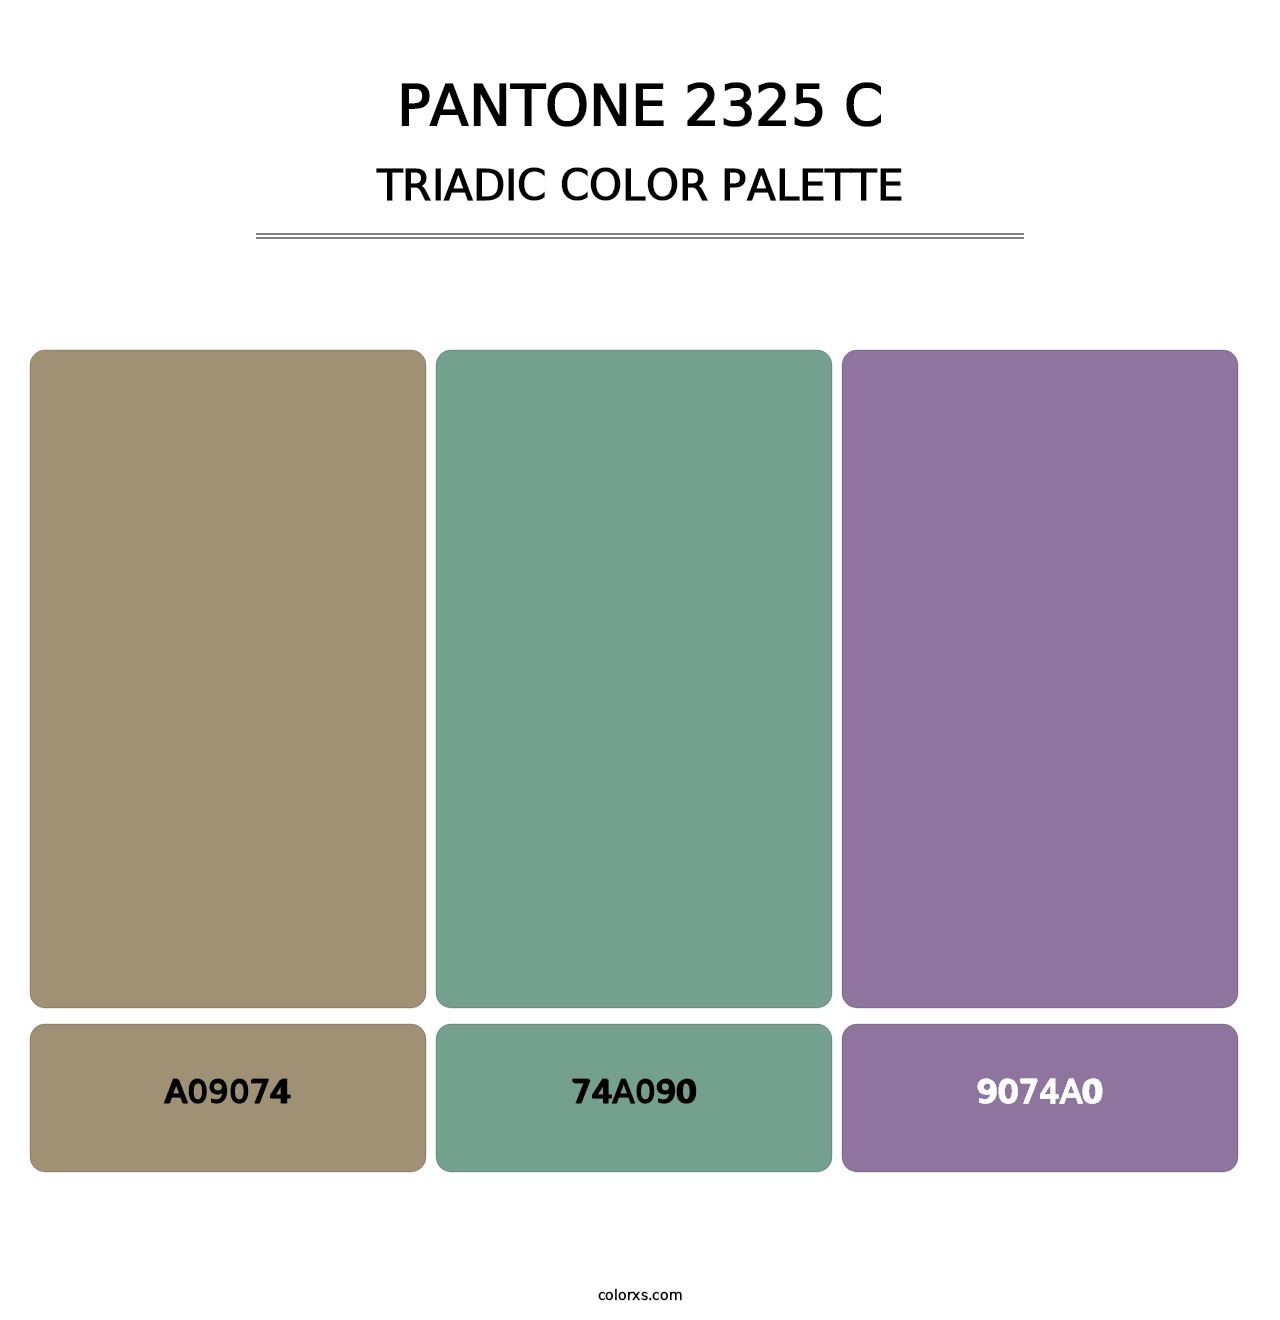 PANTONE 2325 C - Triadic Color Palette